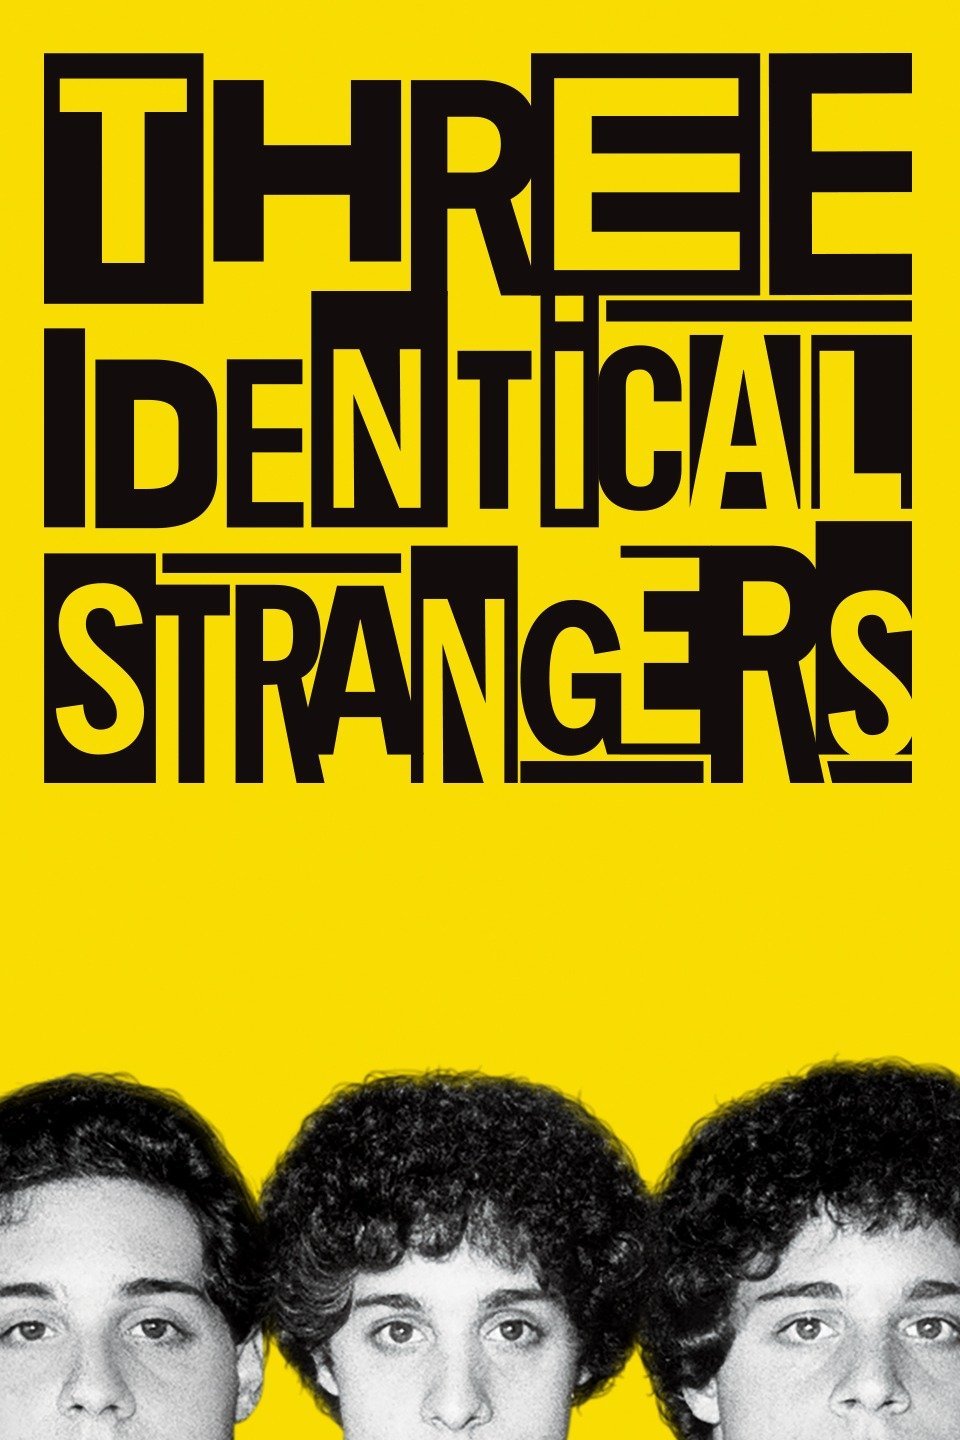 ดูหนังออนไลน์ฟรี Three Identical Strangers (2018) แฝด 3